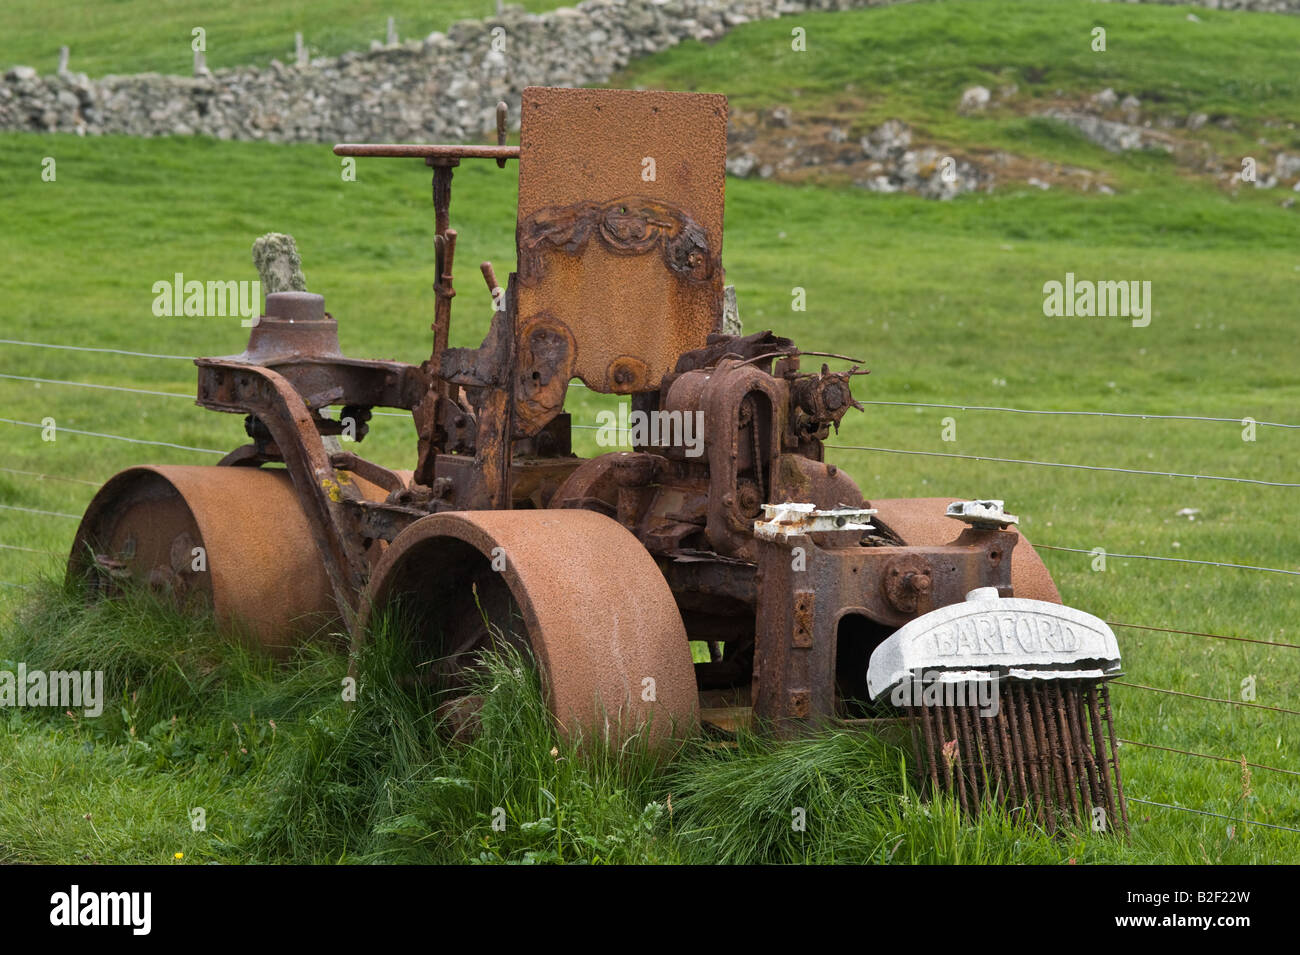 Barford Walze aufgegeben Rusty Maschinen auf der Weide, am Straßenrand, Fair Isle, Shetland Islands, Schottland, Juni Stockfoto